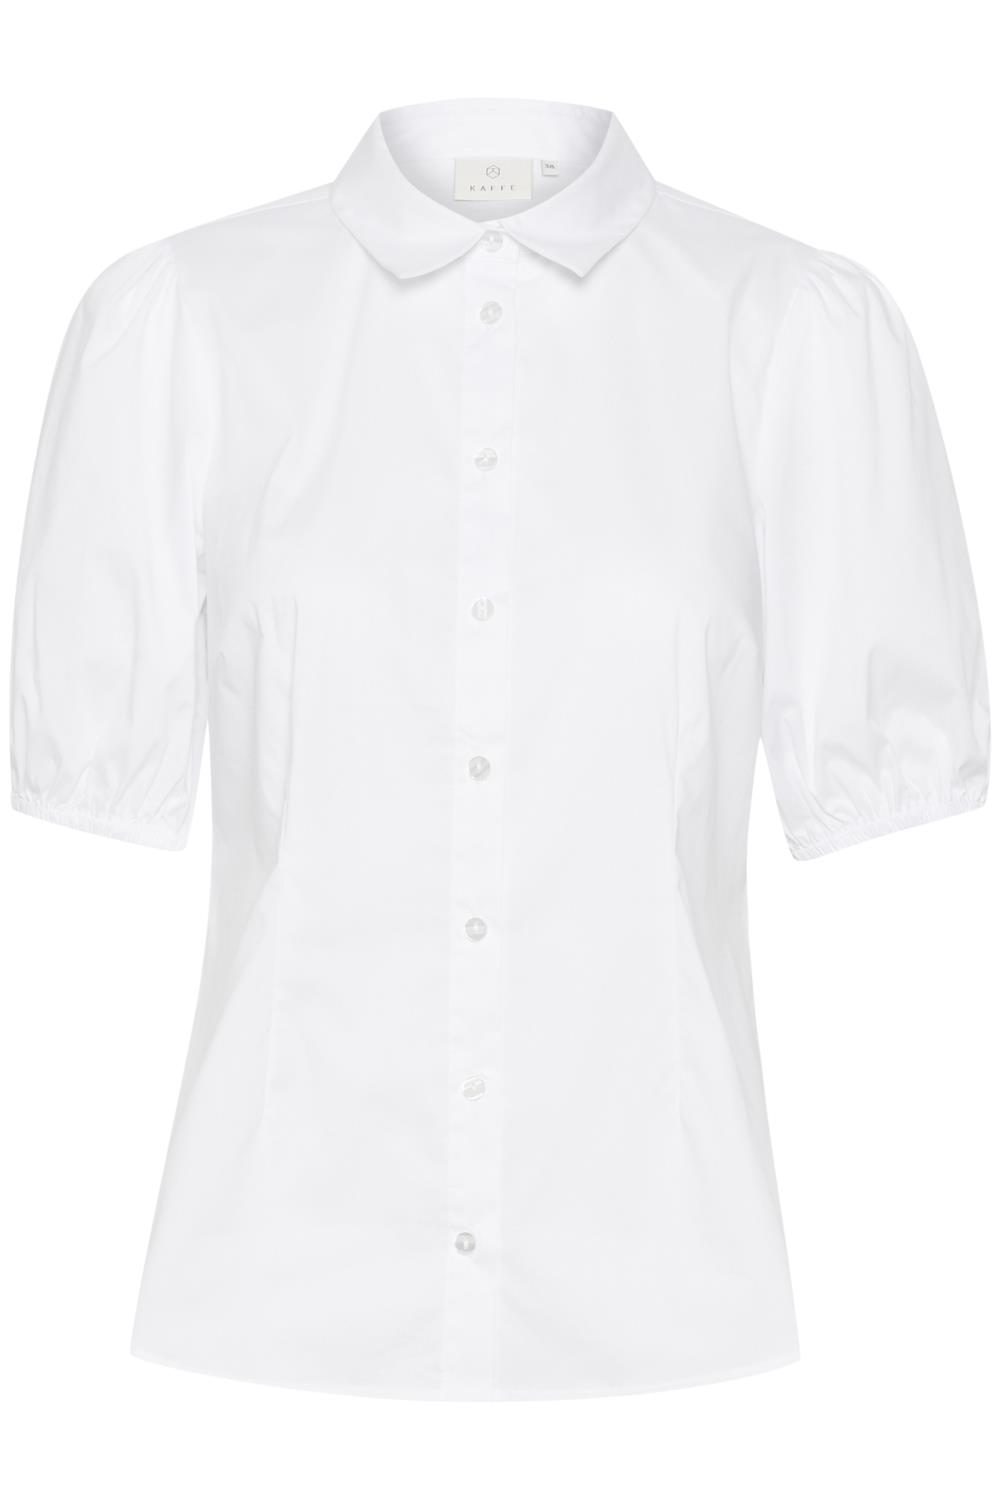 Kaffe KAnicoline Shirt, kortermet skjorte, hvit